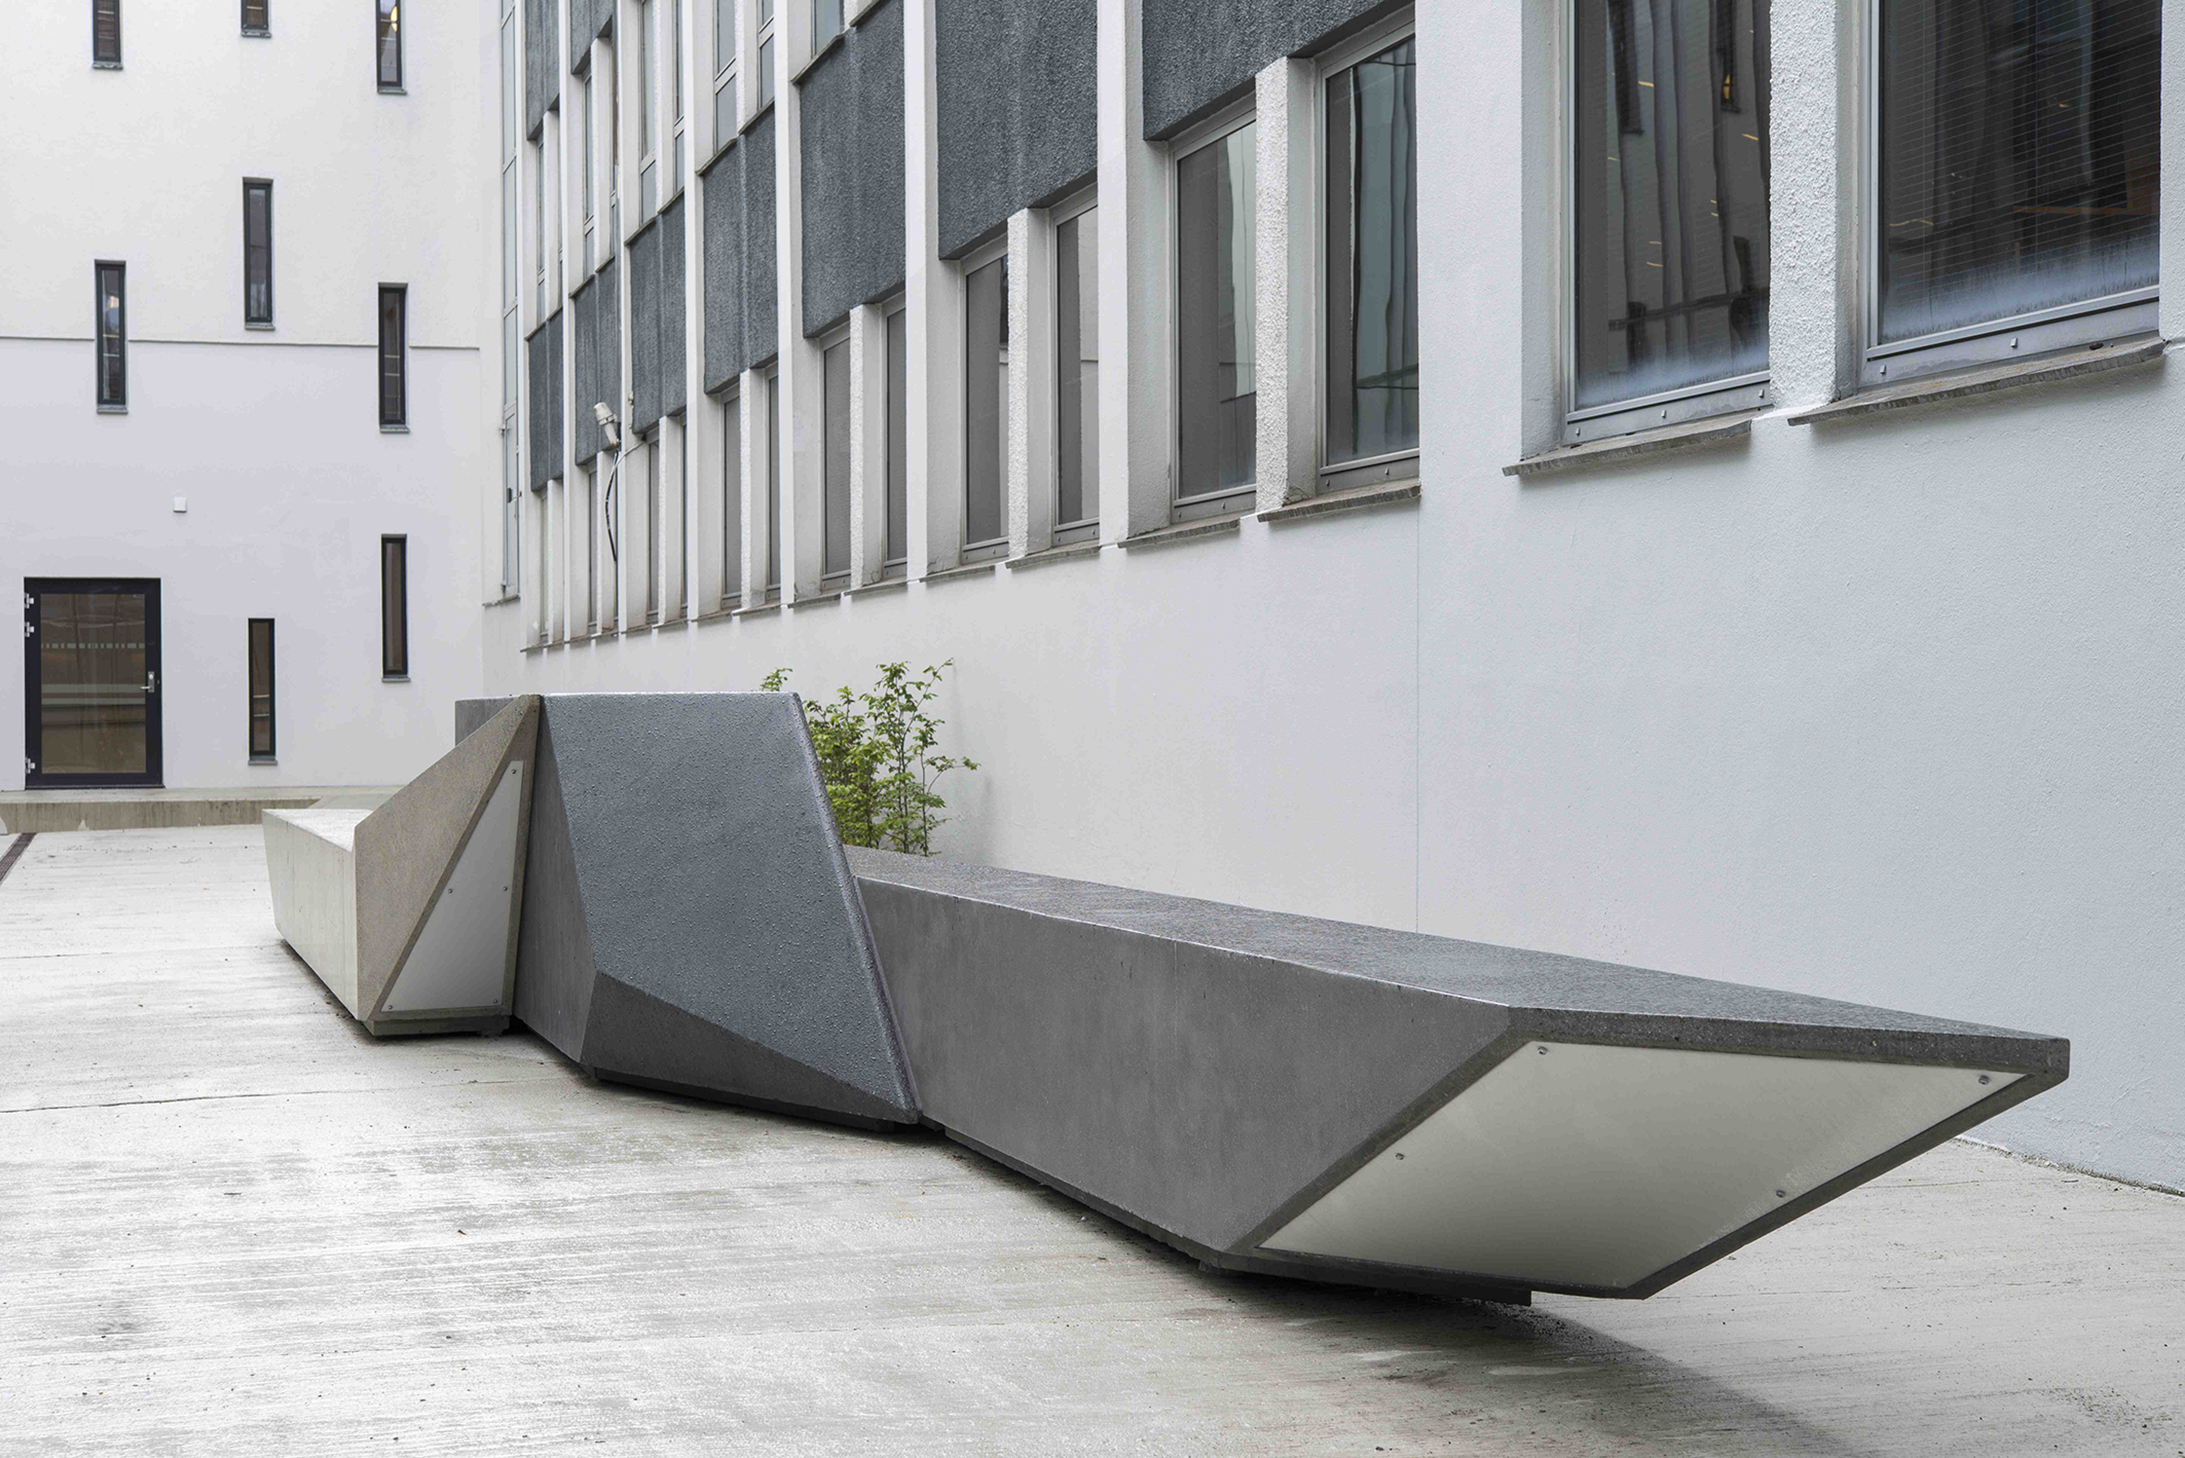   Unfolded Shape Drifter  Concrete sculpture 